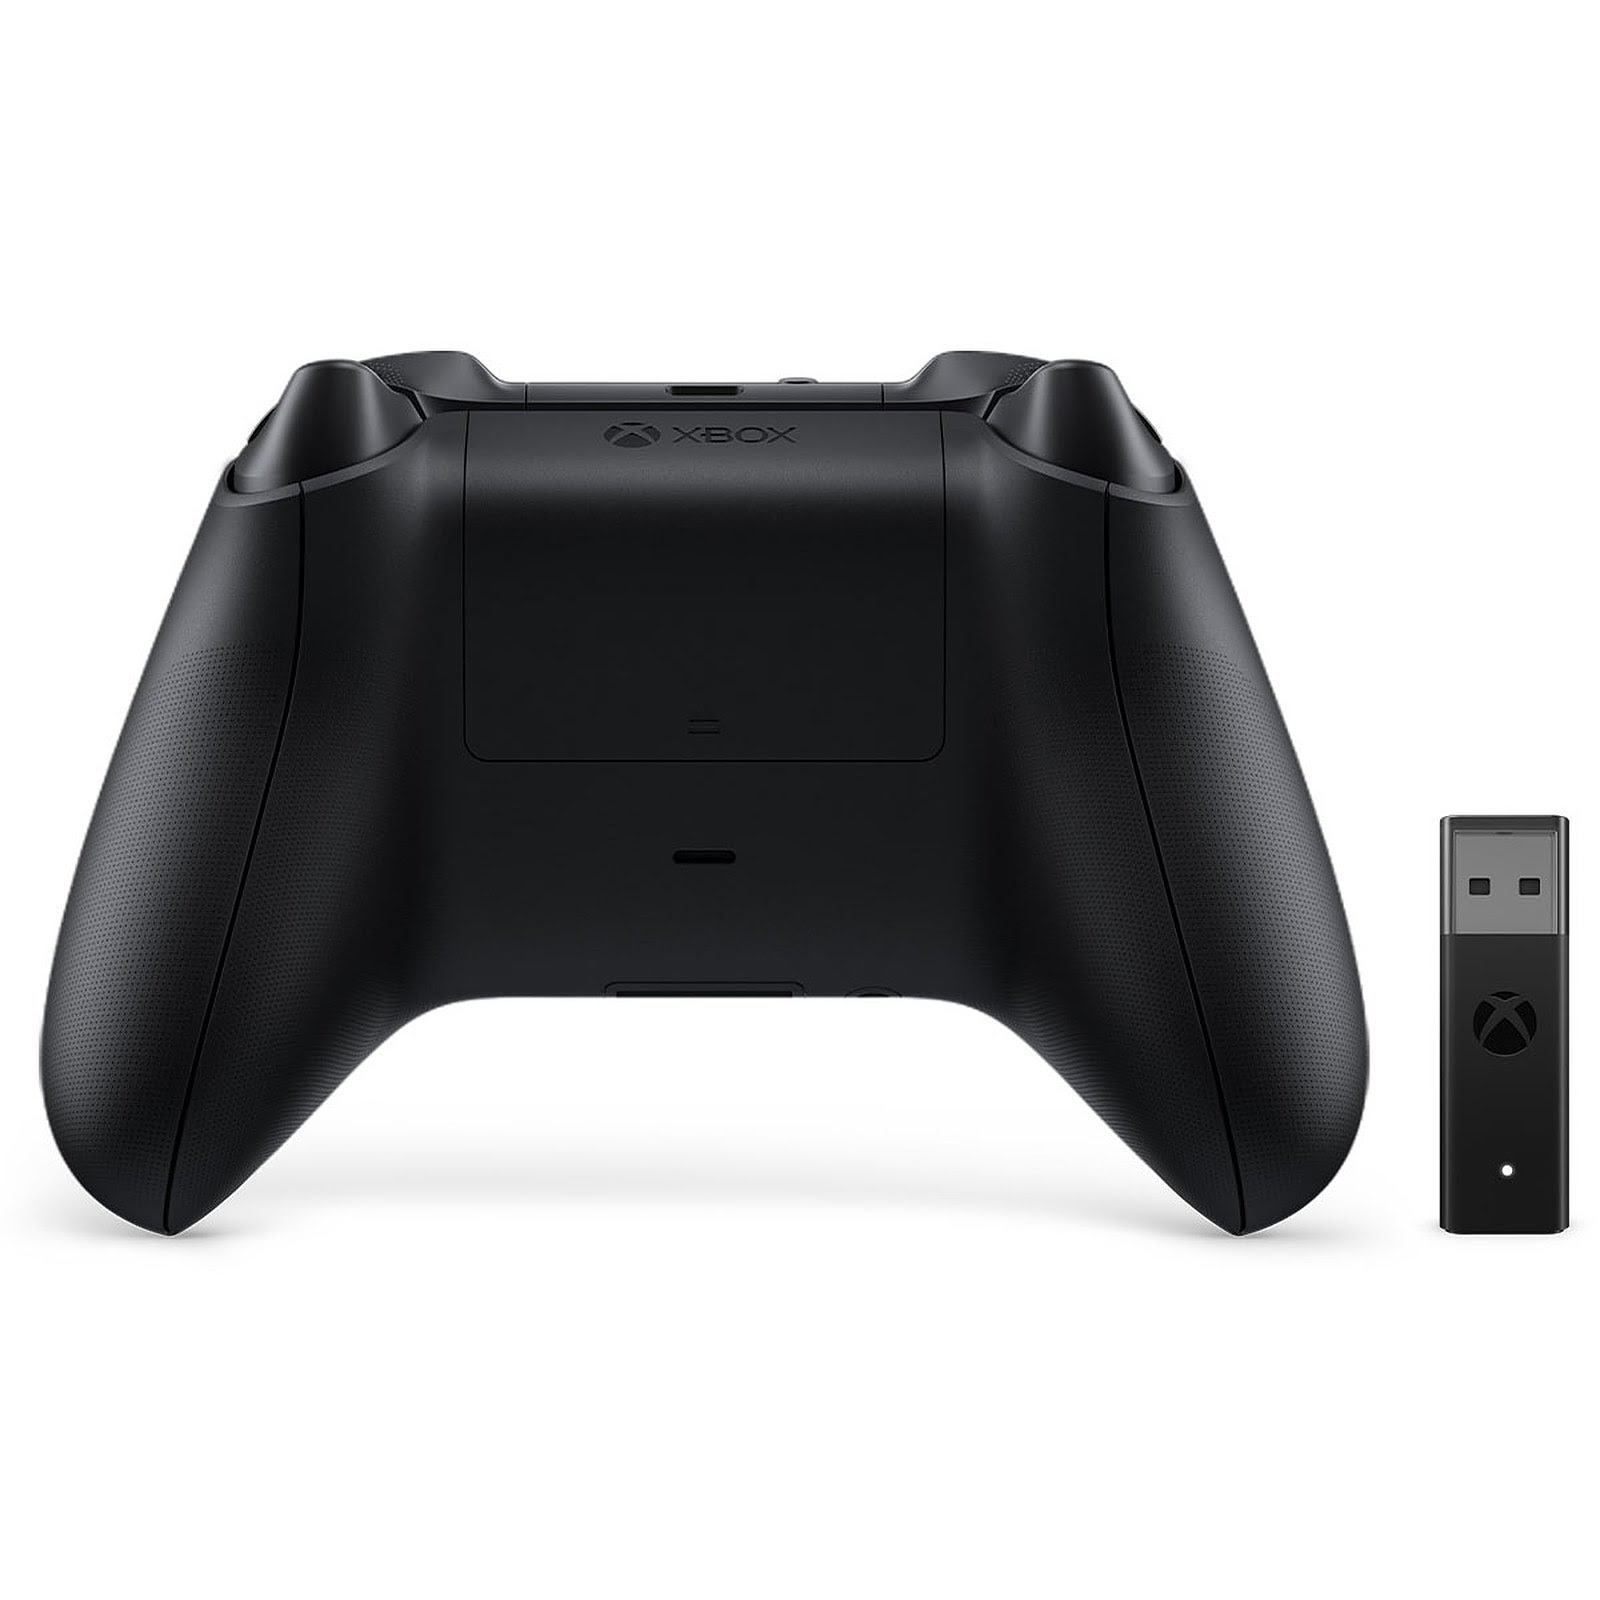 Microsoft Manette sans fil noire Xbox avec Adaptateur PC - Périphérique de jeu - 1